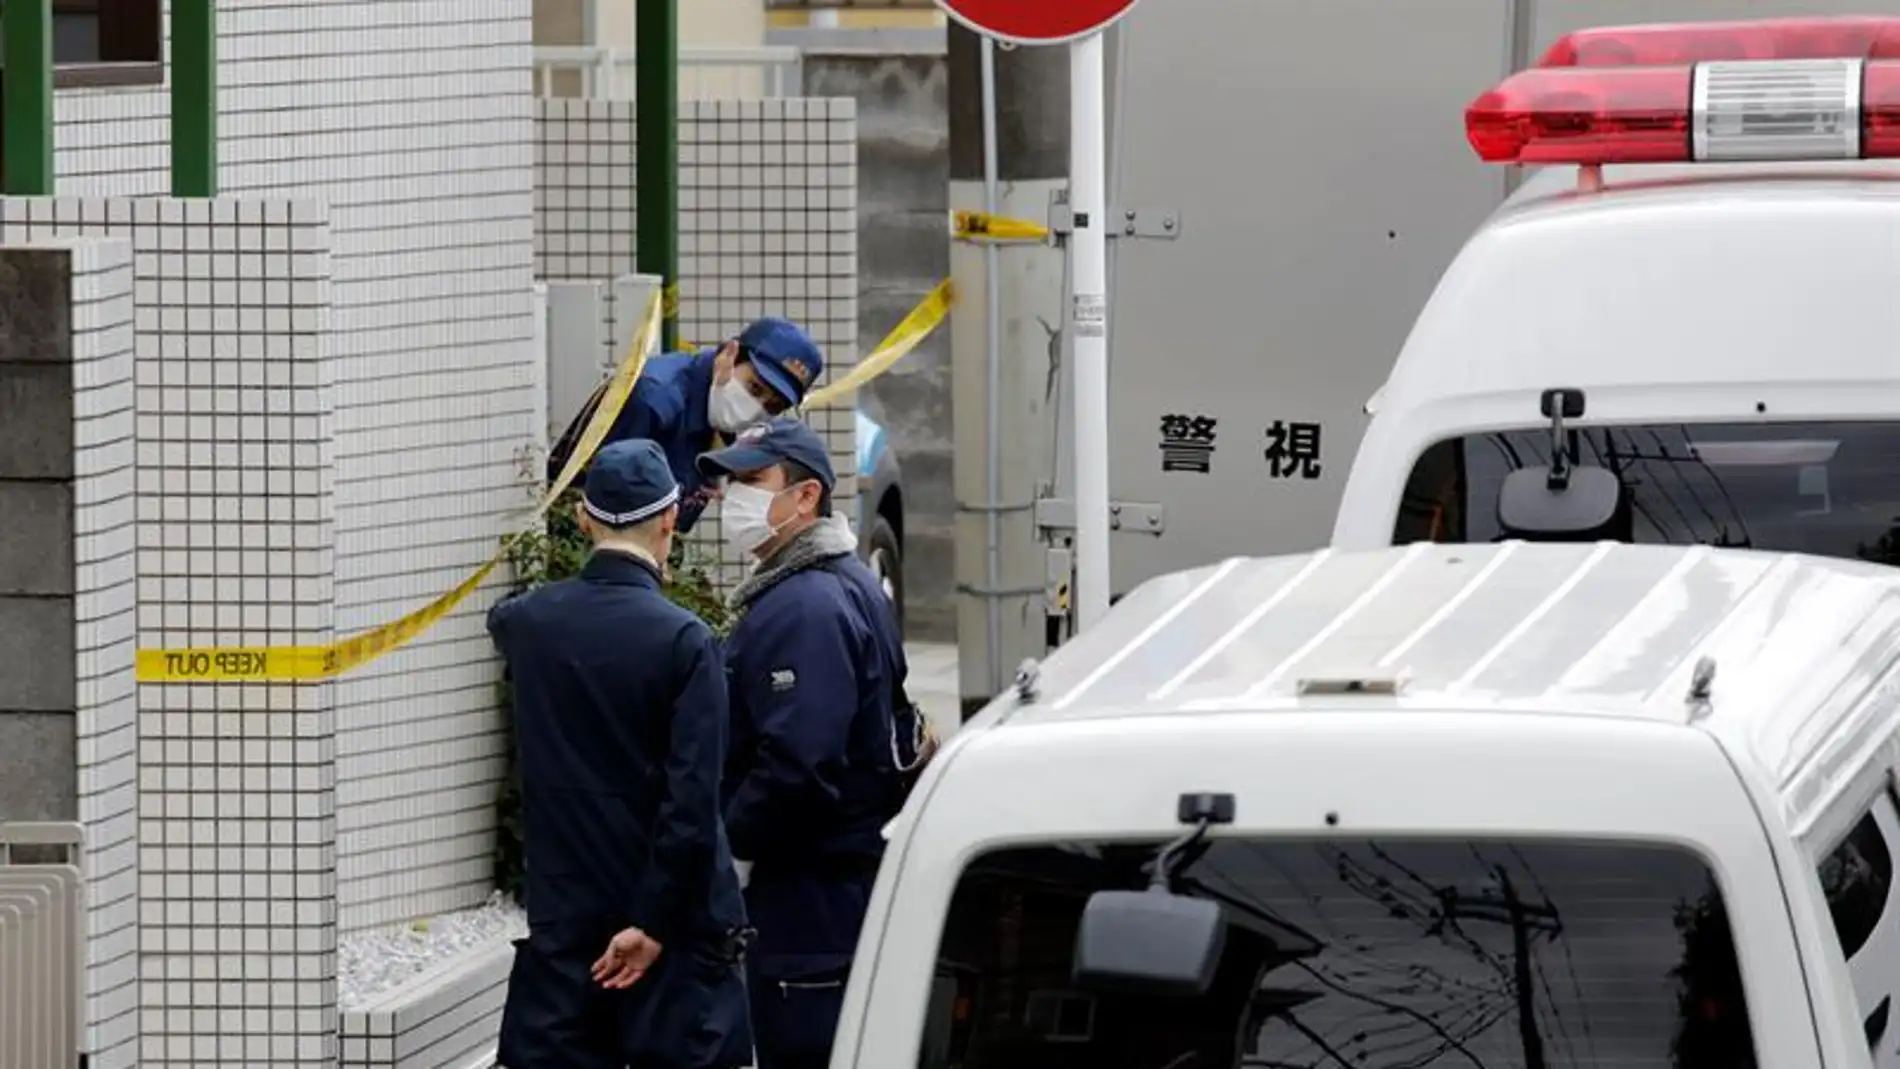 Investigadores policiales y policía forense japoneses